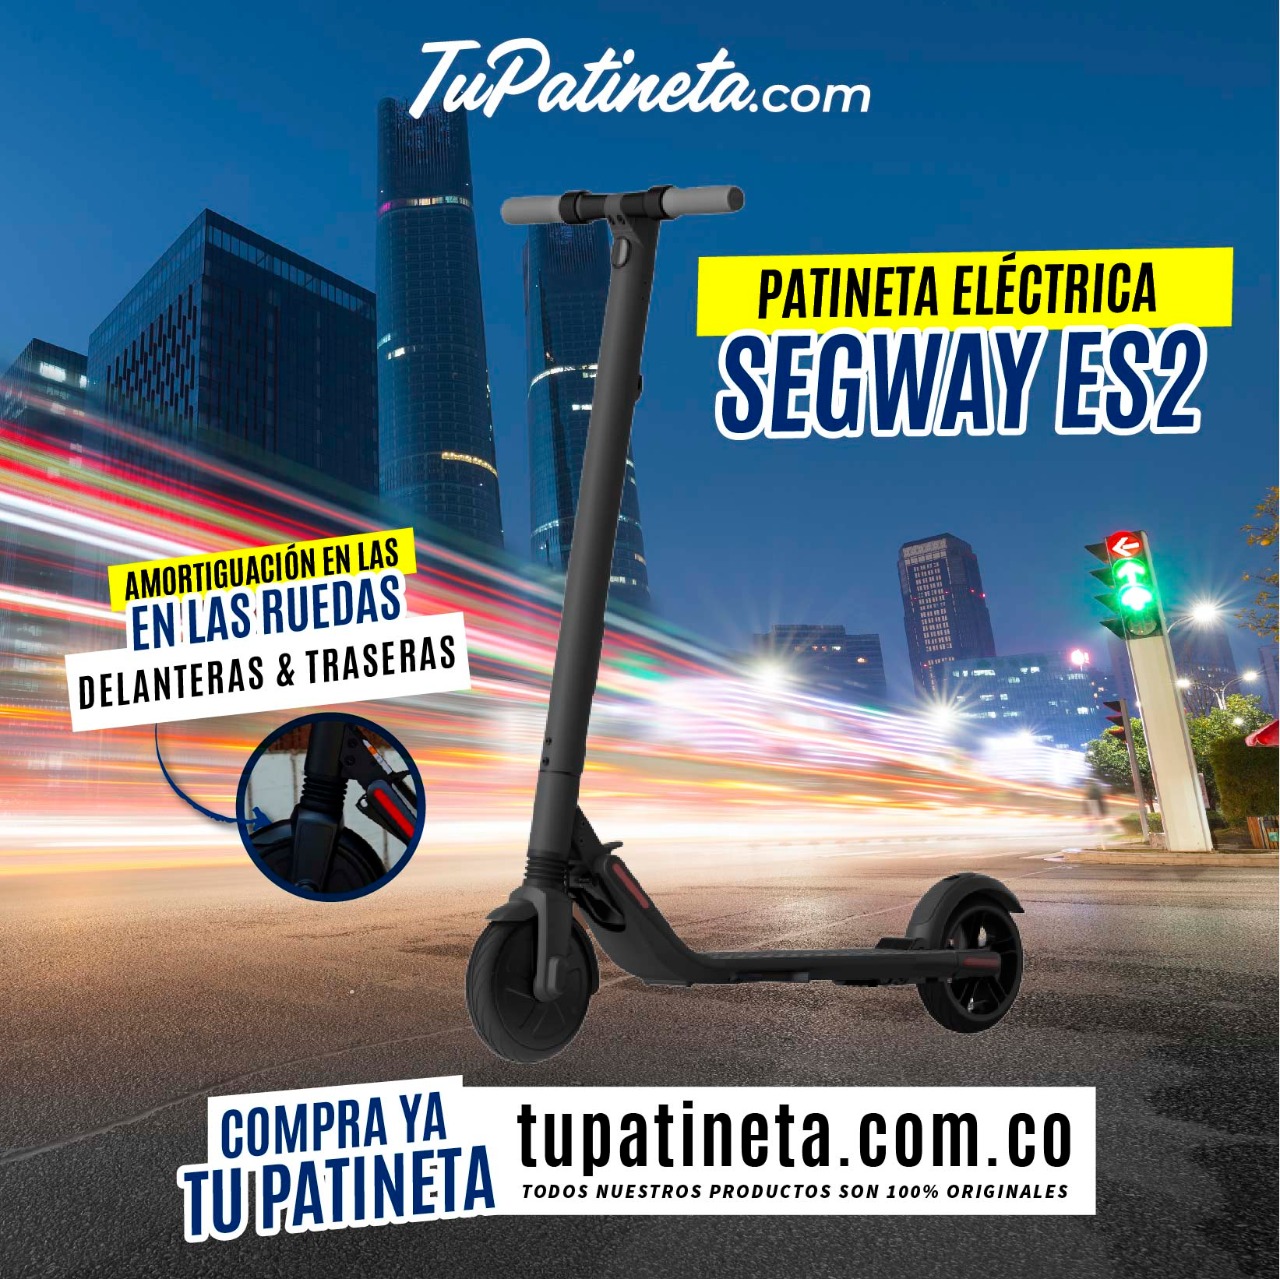 válvula Categoría jamón TuPatineta.com on Twitter: "Muévete rápido y llega más lejos comprando una patineta  eléctrica Segway Es2 😍🛴 ✓ Productos 100% originales. 💻  https://t.co/eRMKefbMCW 📩 Envíos a nivel nacional. 📲 313 8442194 #trancon  #tupatineta #